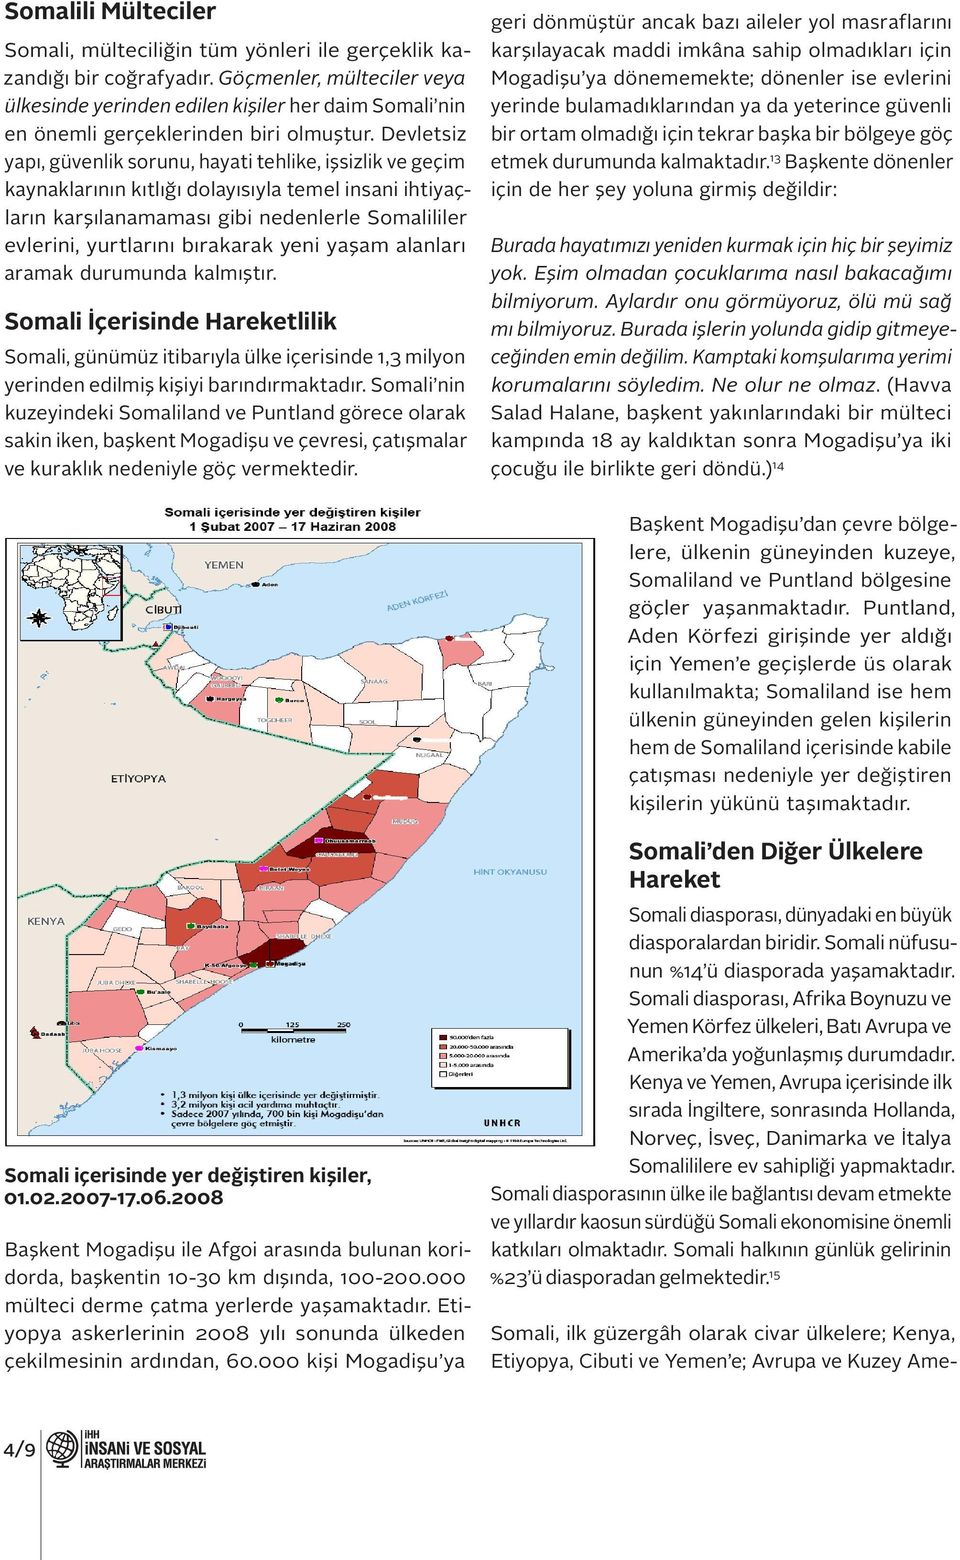 Devletsiz yapı, güvenlik sorunu, hayati tehlike, işsizlik ve geçim kaynaklarının kıtlığı dolayısıyla temel insani ihtiyaçların karşılanamaması gibi nedenlerle Somalililer evlerini, yurtlarını